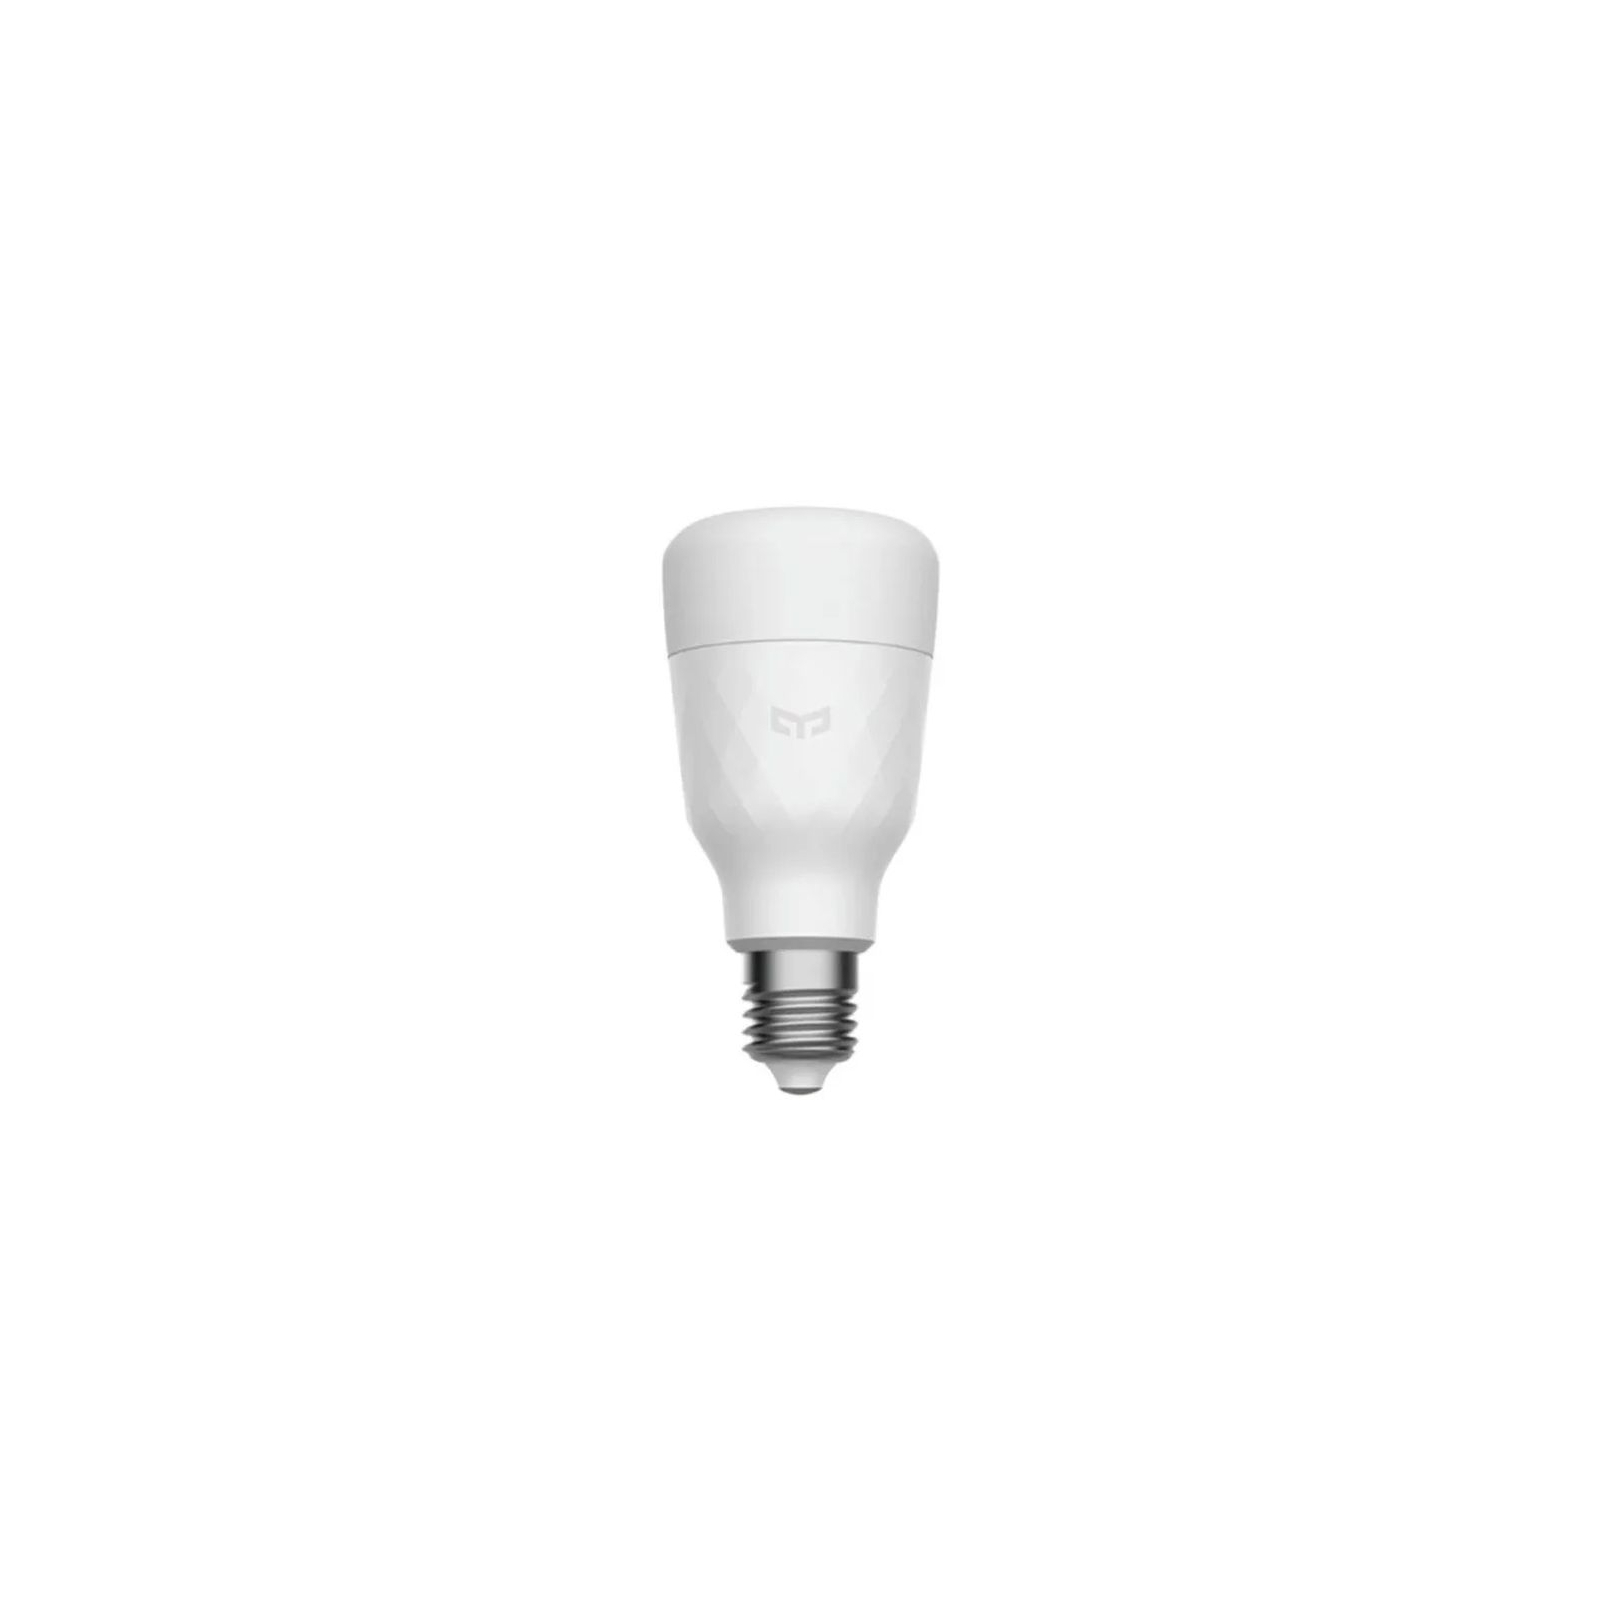 Умная лампочка Yeelight Smart LED Bulb W3(White) (YLDP007) изображение 2